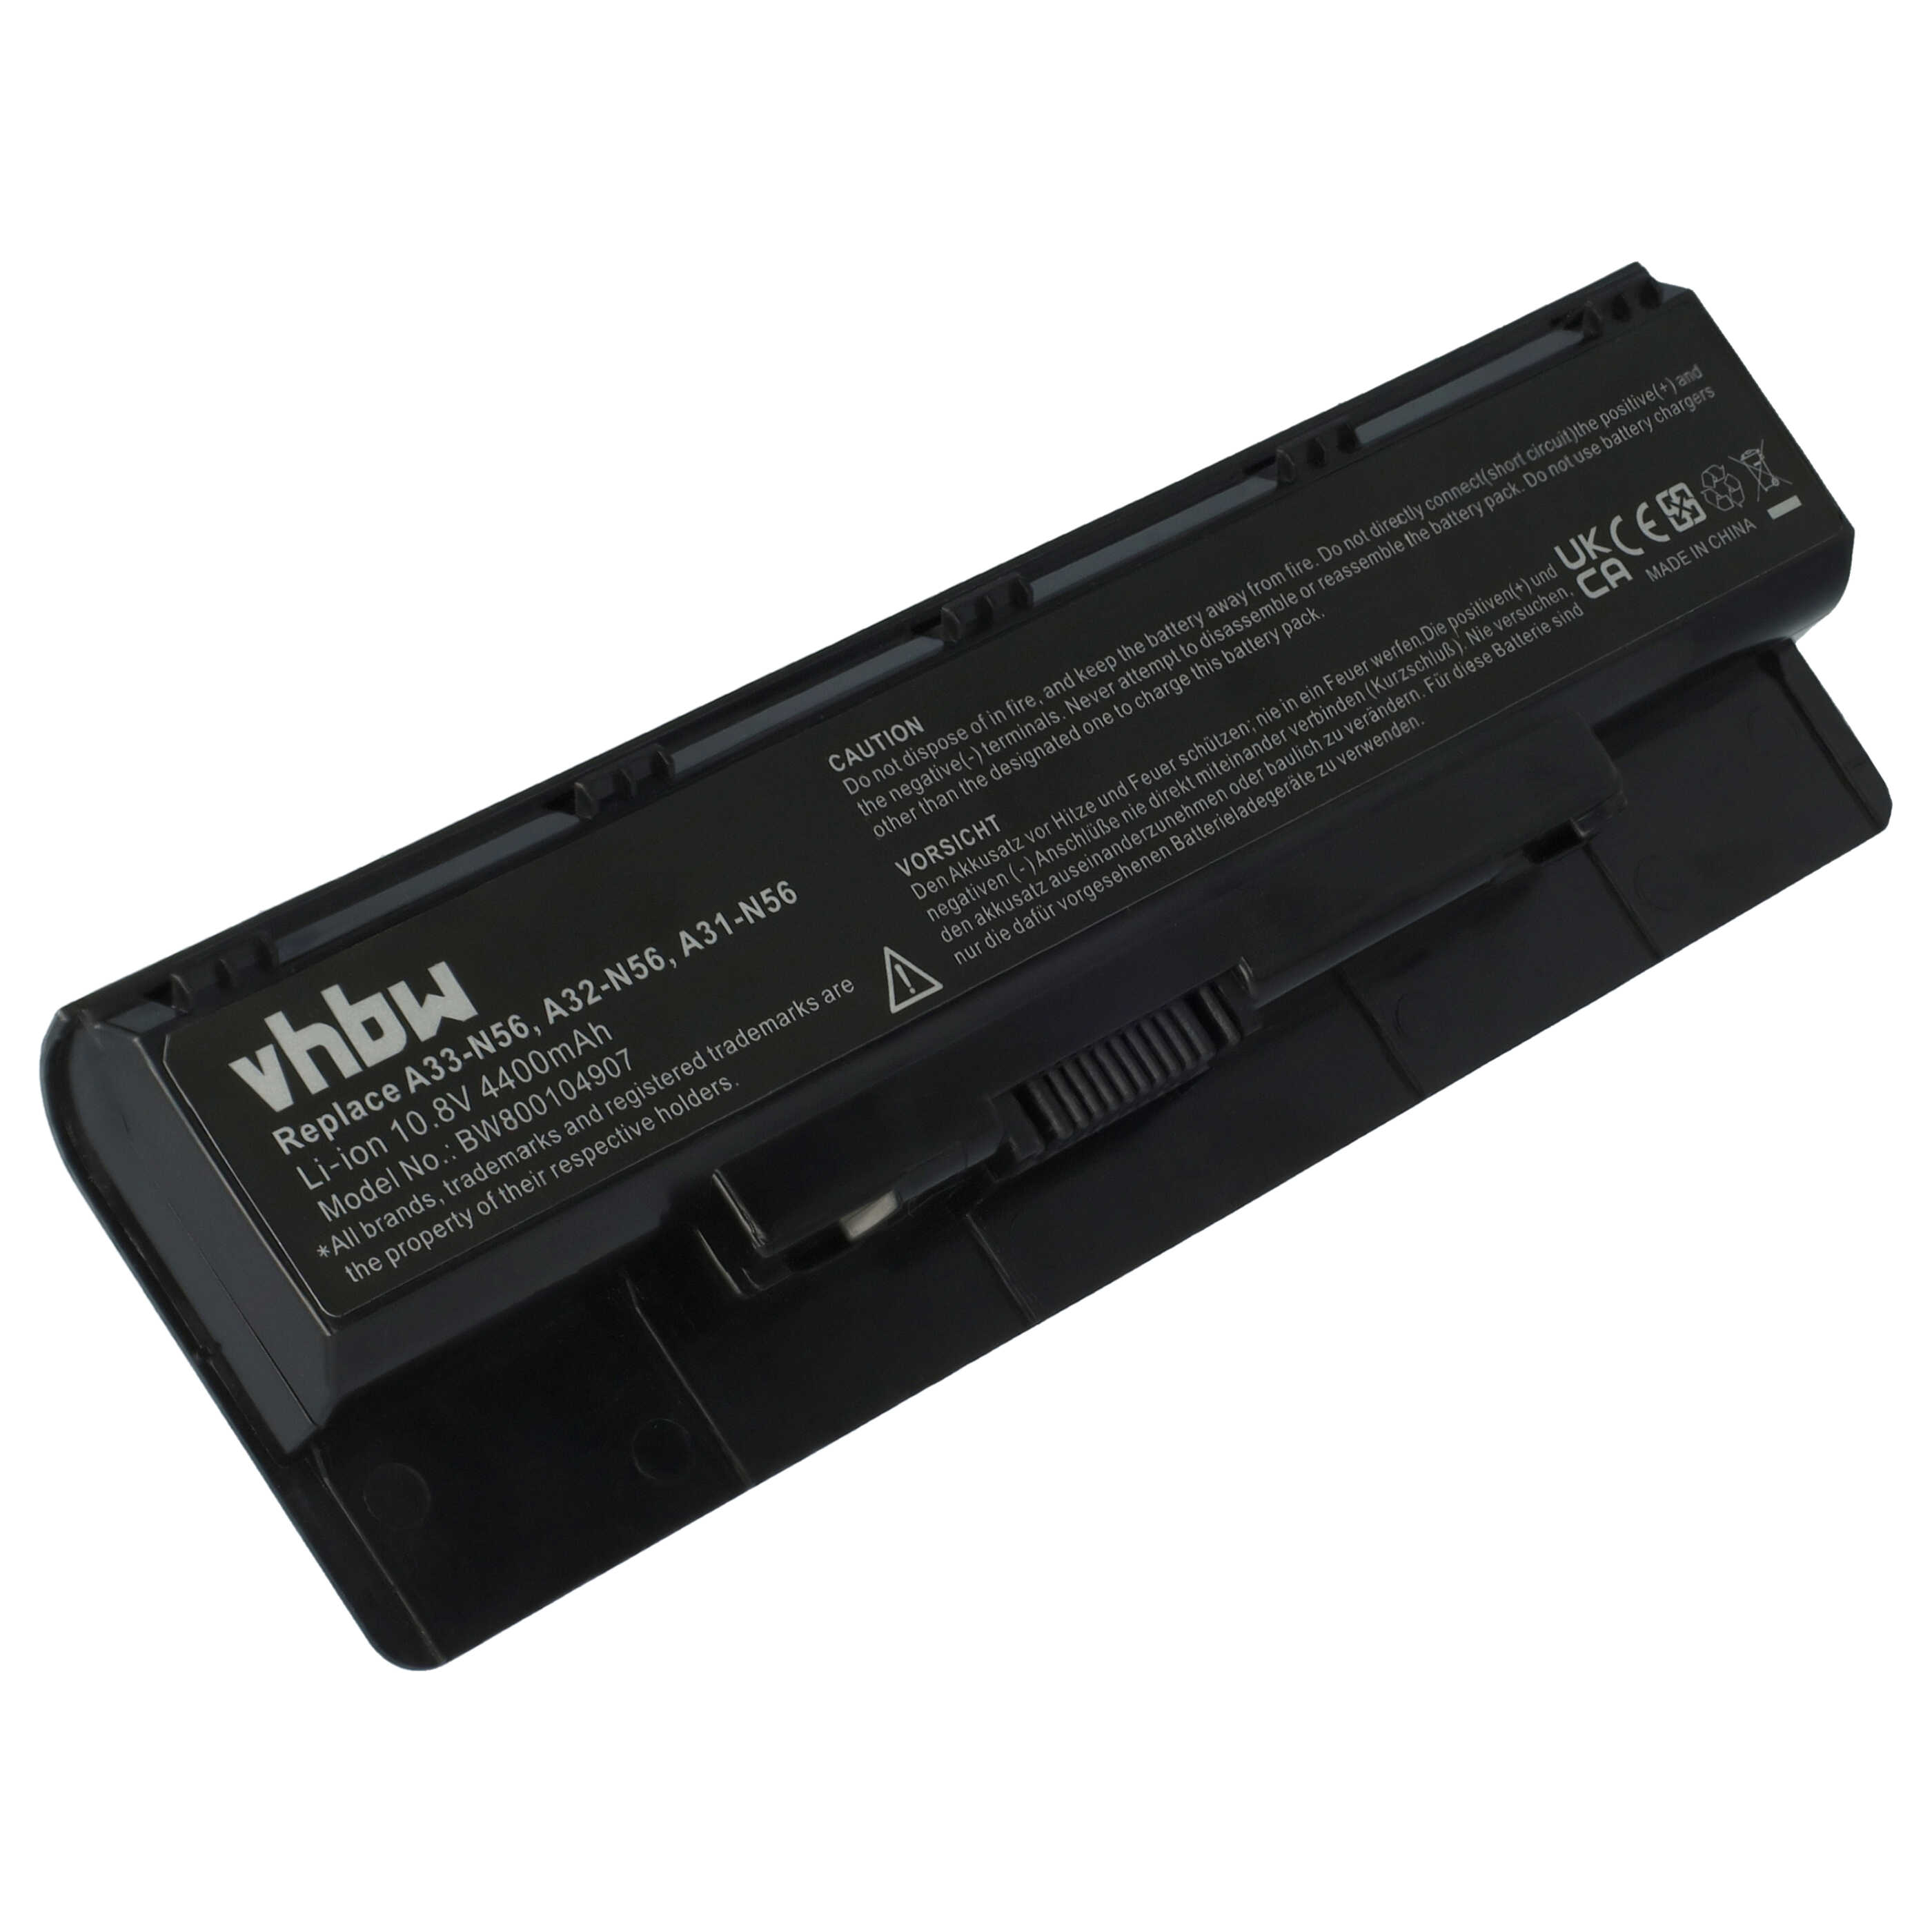 Batterie remplace Asus A32-N56, A31-N56, A33-N56 pour ordinateur portable - 4400mAh 10,8V Li-ion, noir